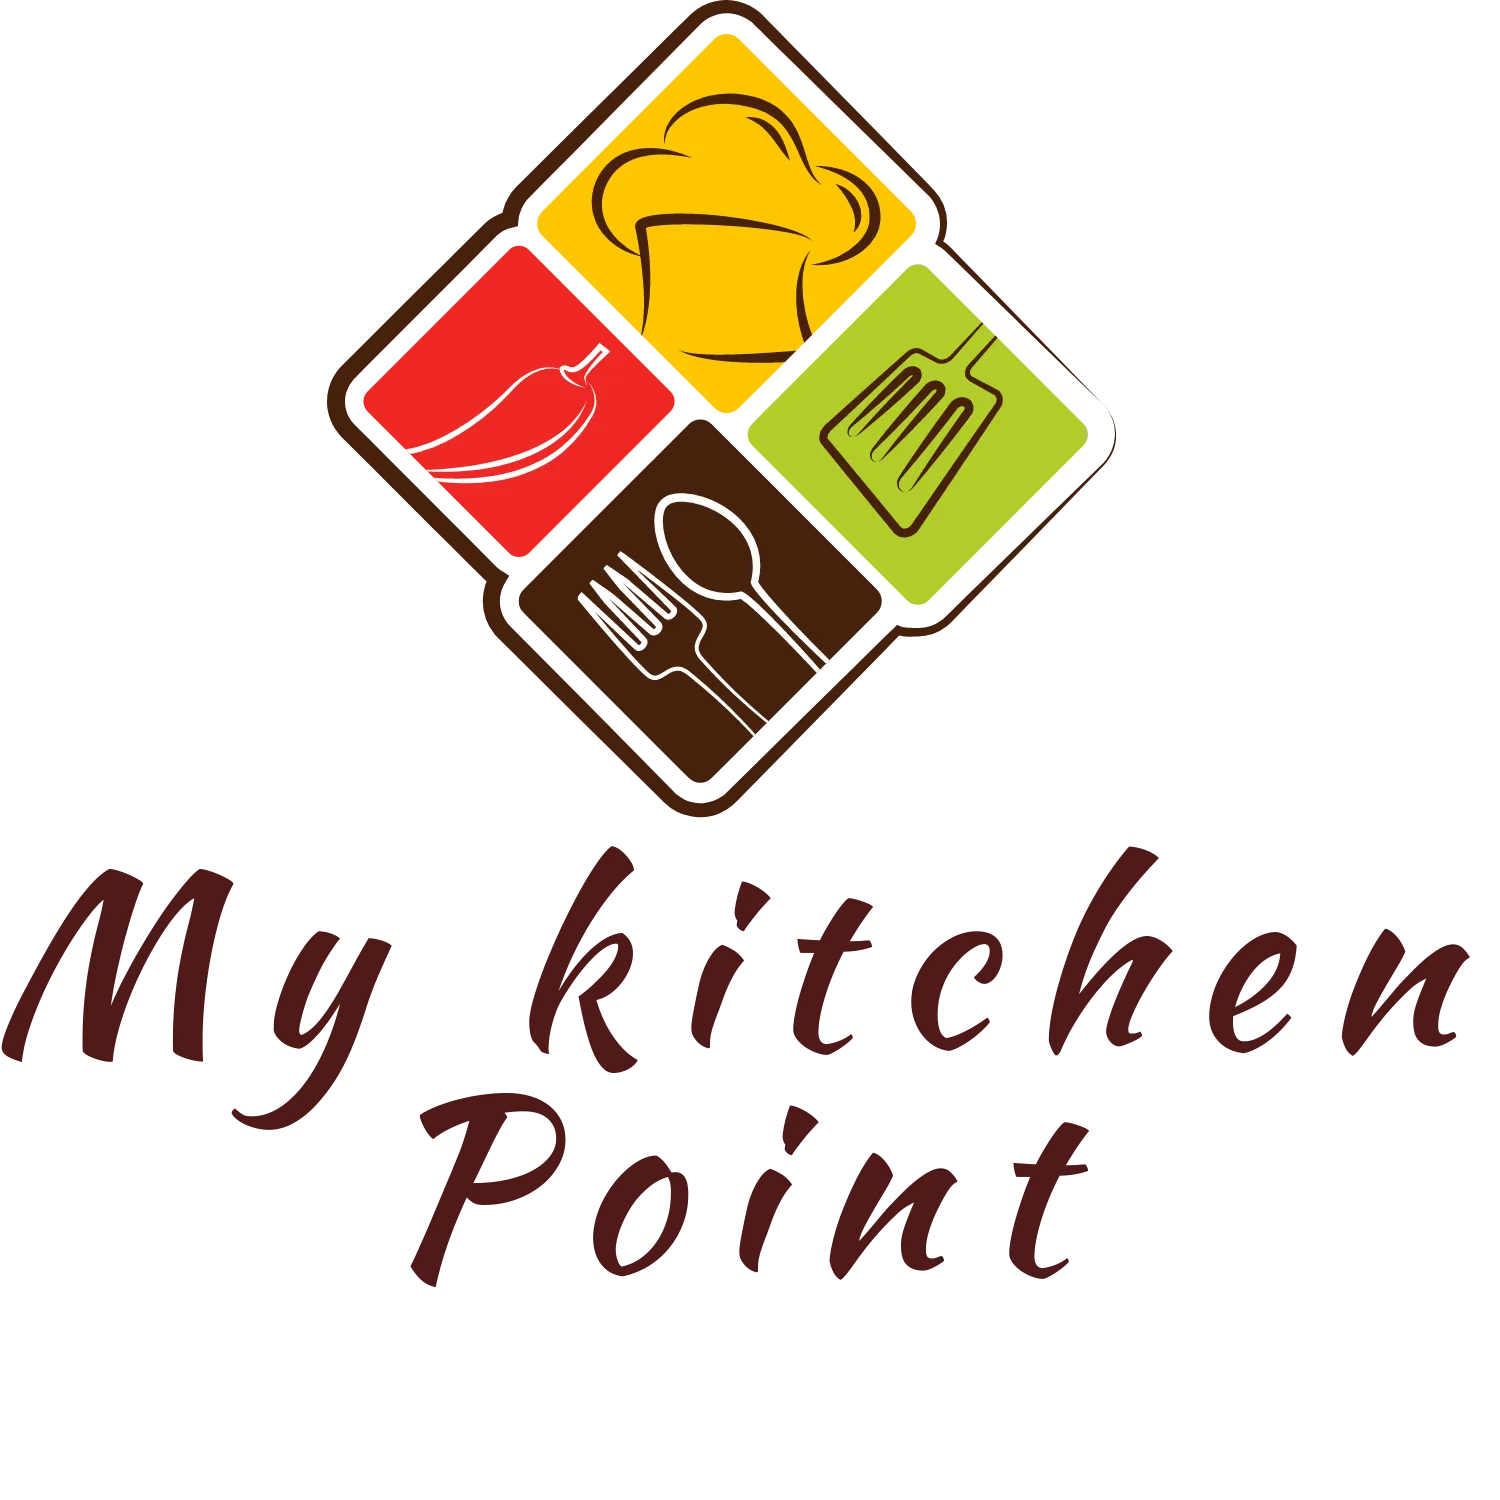 My Kitchen point